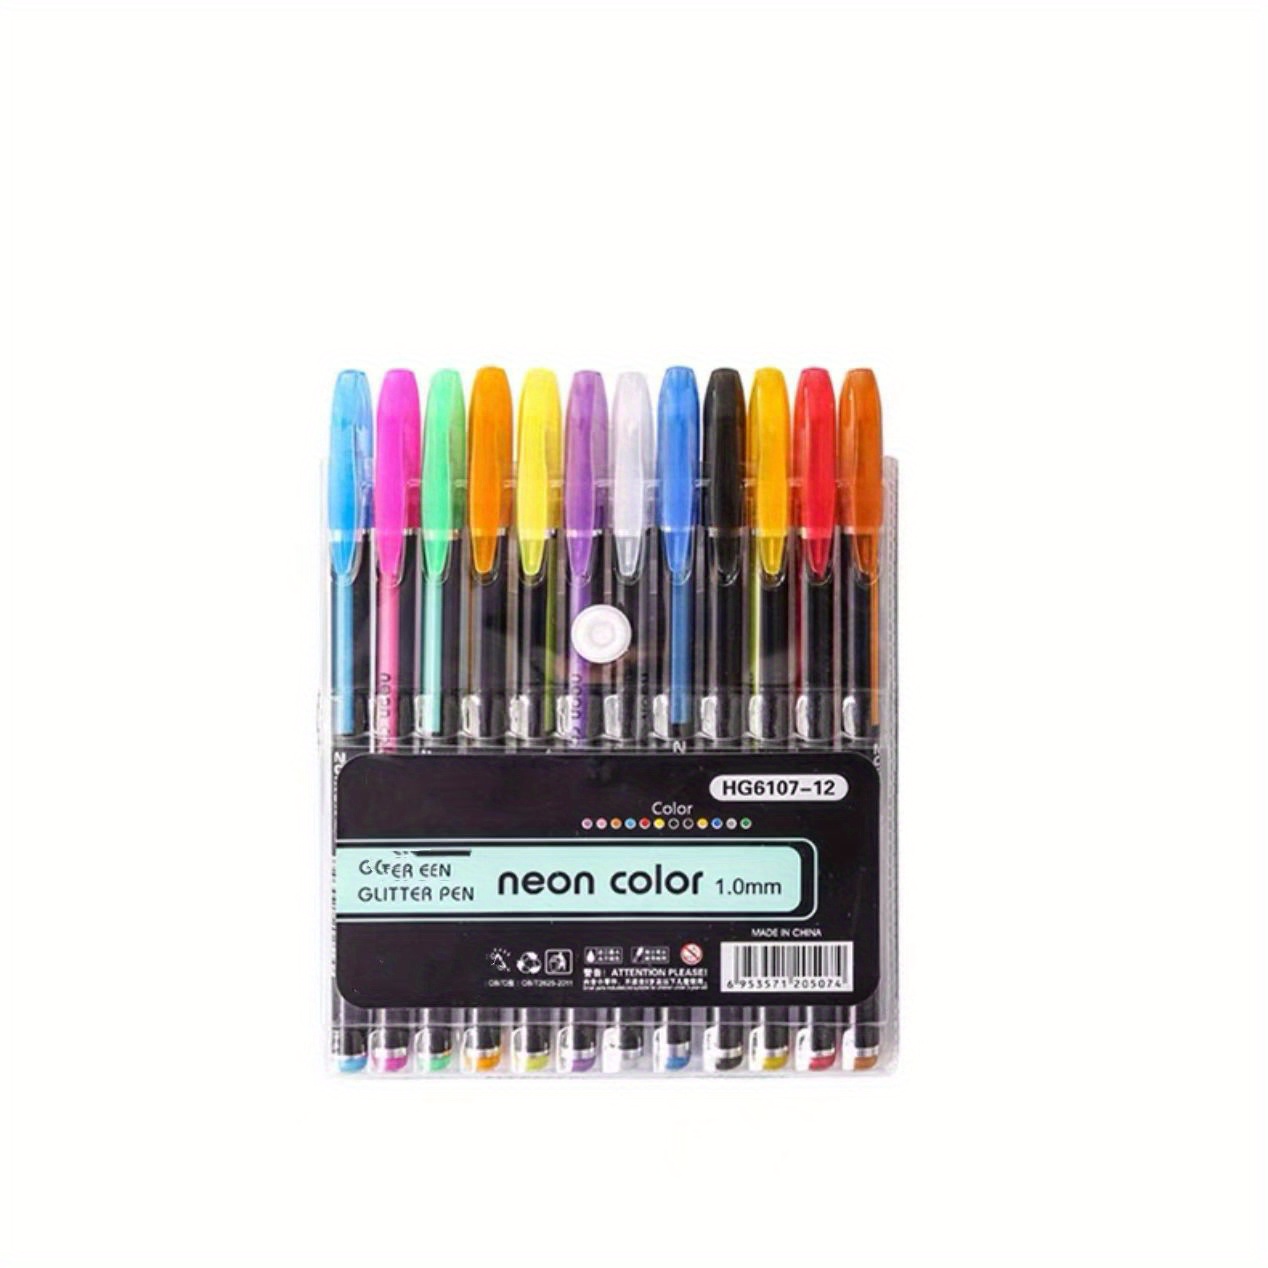  SEWACC 1 Set Handaccountpenmorantigelpencolourpencil Candy  Color Pens Watercolor Pen Marker Pens Colored Markers for Kids Photo Pen  Kids Color Pens Gel Pen Child Colour Pencil Vintage : Arts, Crafts & Sewing